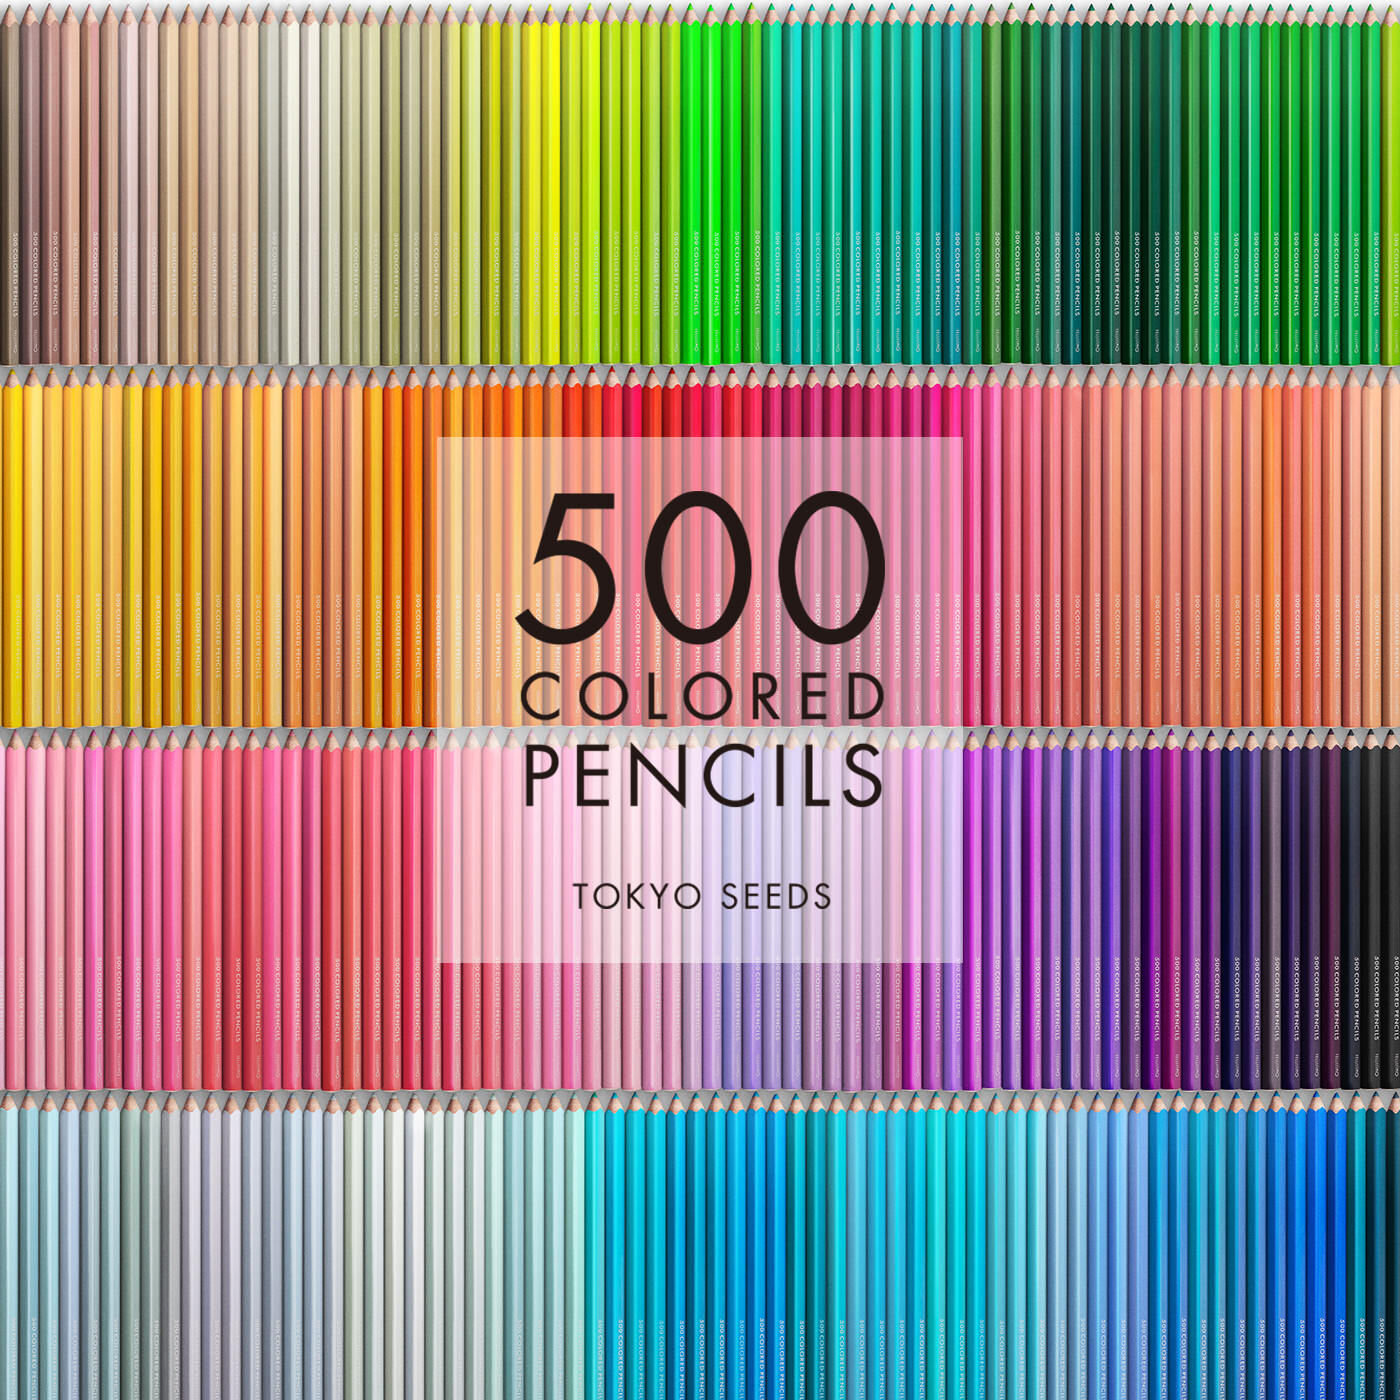 Real Stock|【181/500 BLUEBIRD RUN】500色の色えんぴつ TOKYO SEEDS|1992年、世界初の「500色」という膨大な色数の色えんぴつが誕生して以来、その販売数は発売当初から合わせると、世界55ヵ国10万セット以上。今回、メイド・イン・ジャパンにこだわり、すべてが新しく生まれ変わって登場しました。